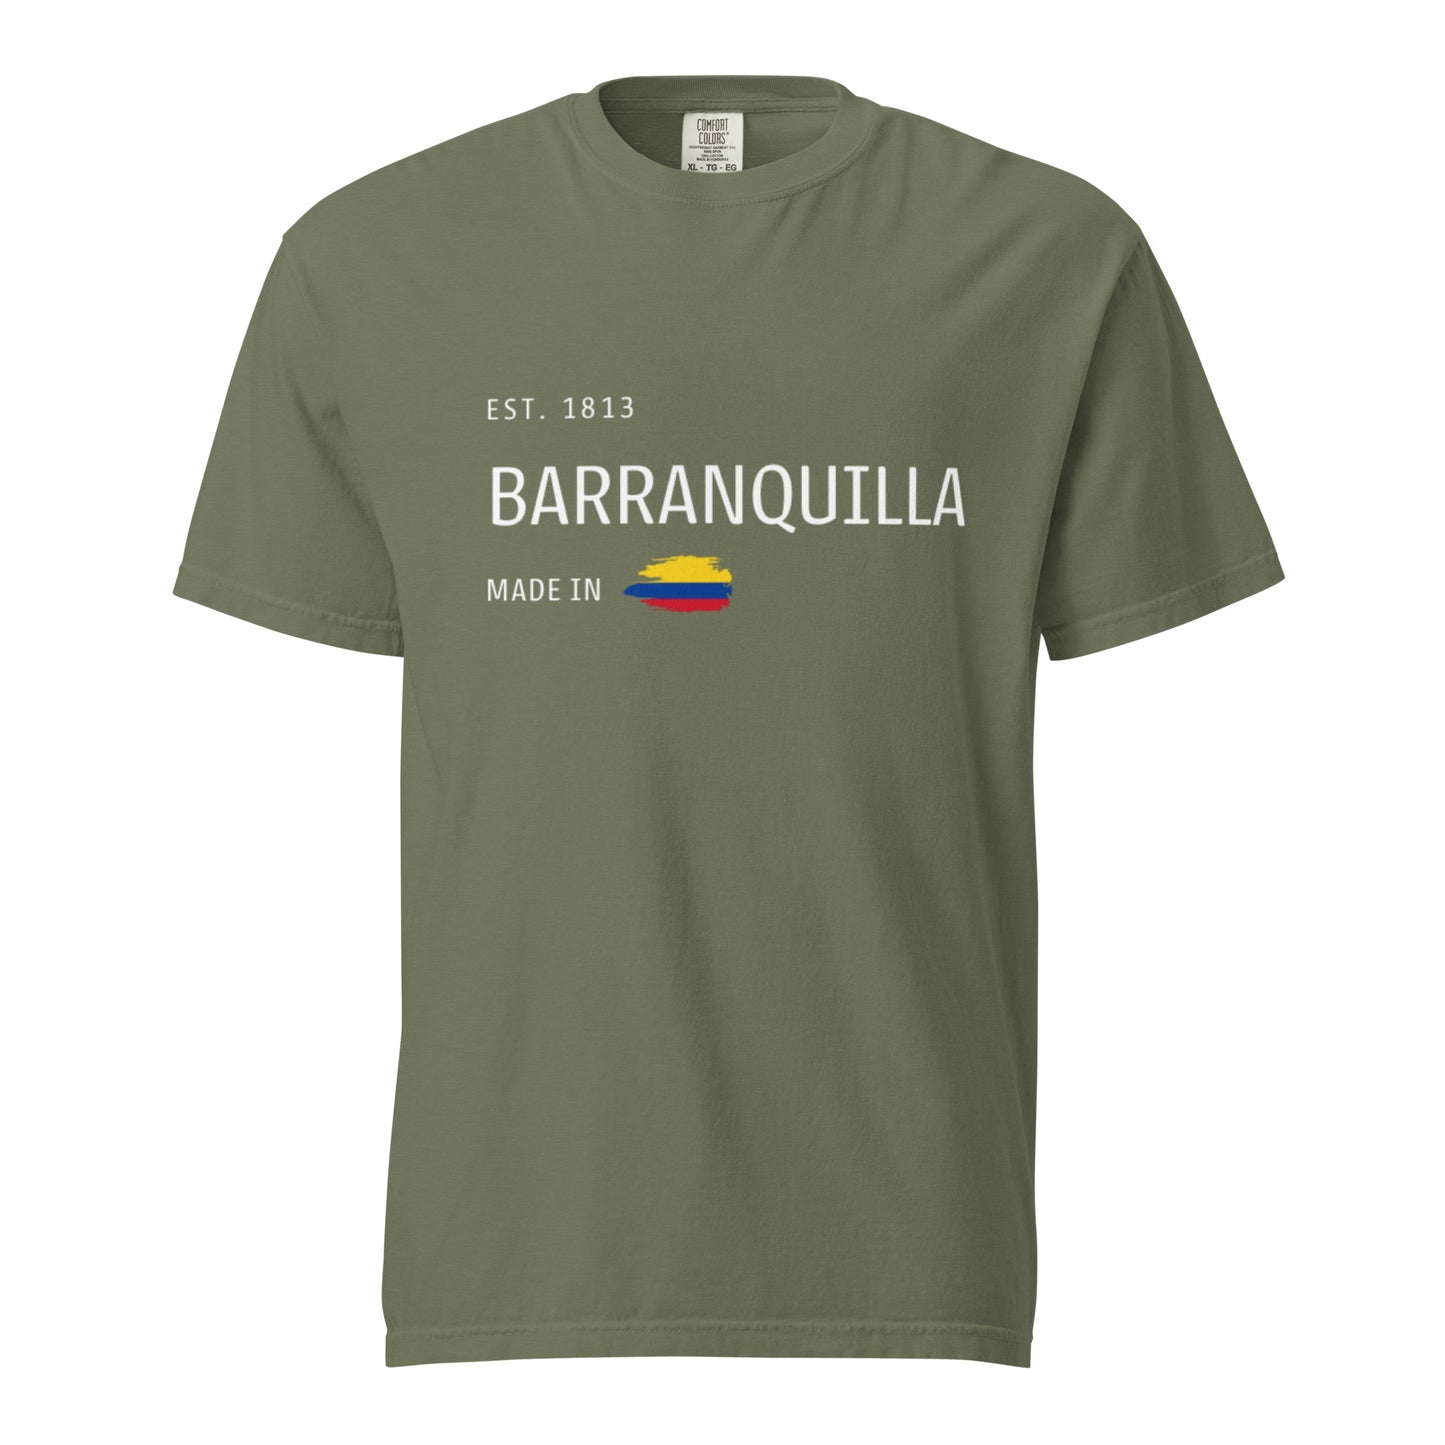 Made in Barranquilla Shirt